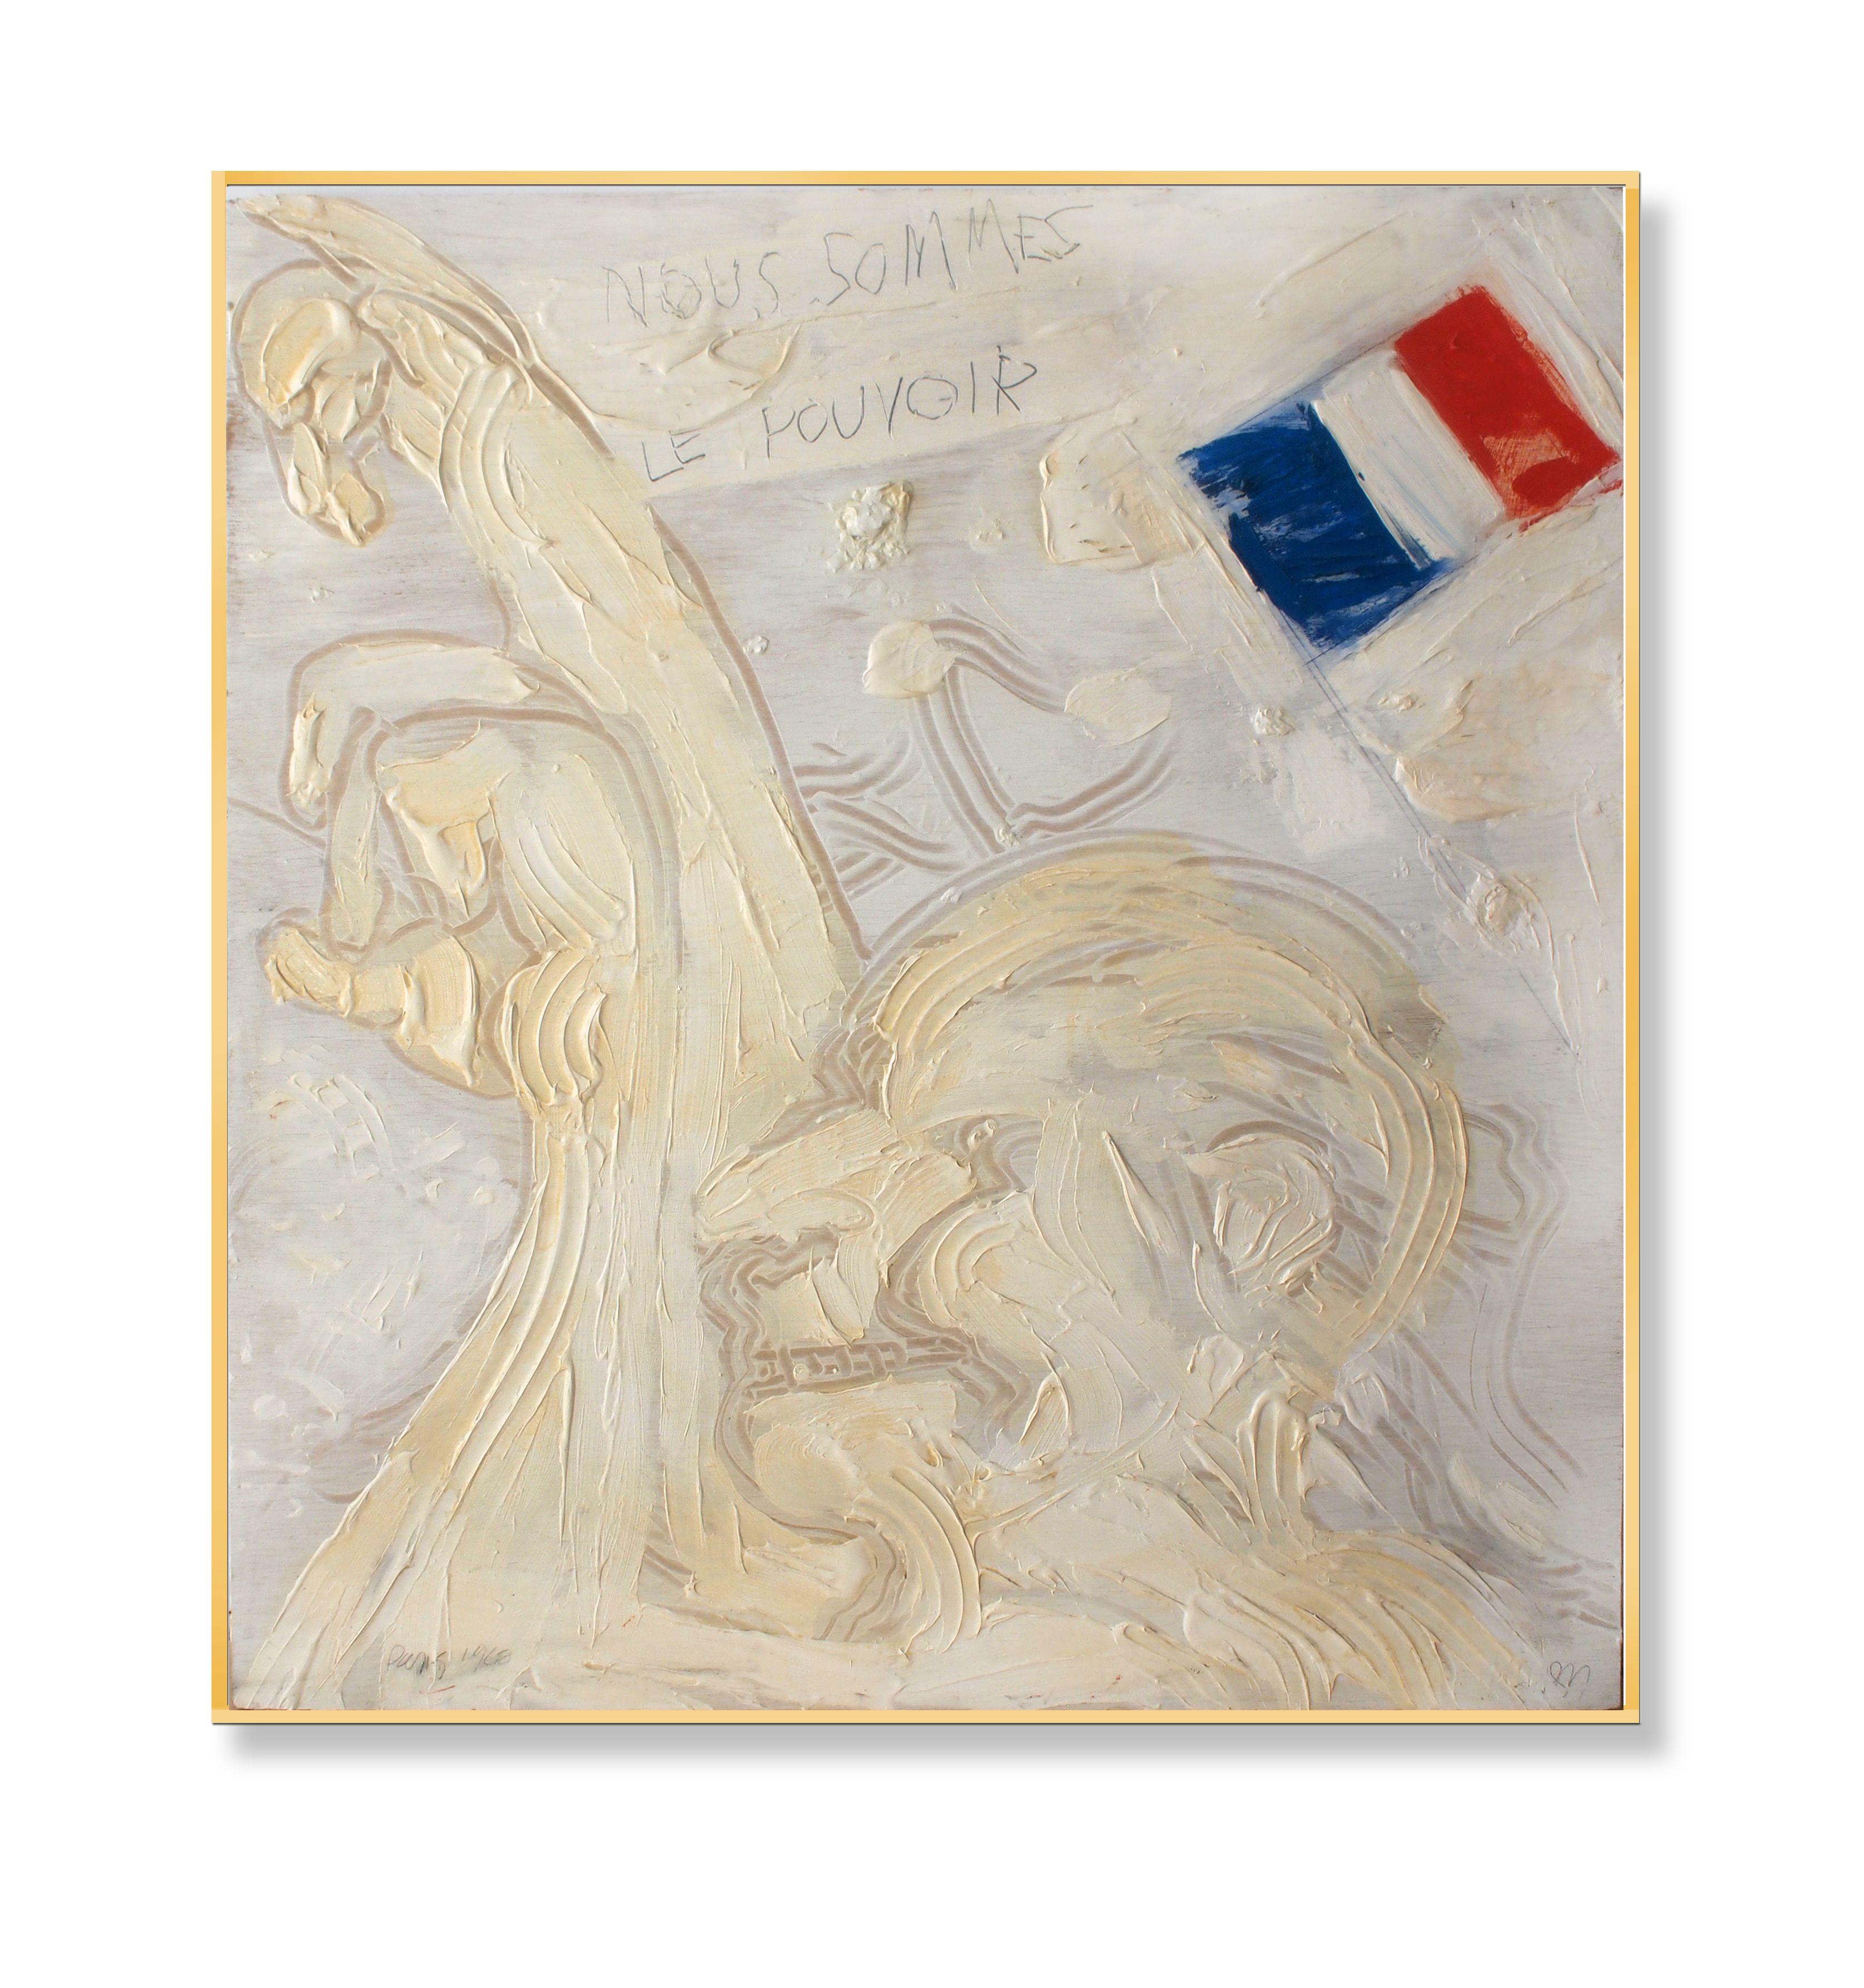 paris'68, Peinture, huile sur panneau de bois - Painting de Edward Zelinsky